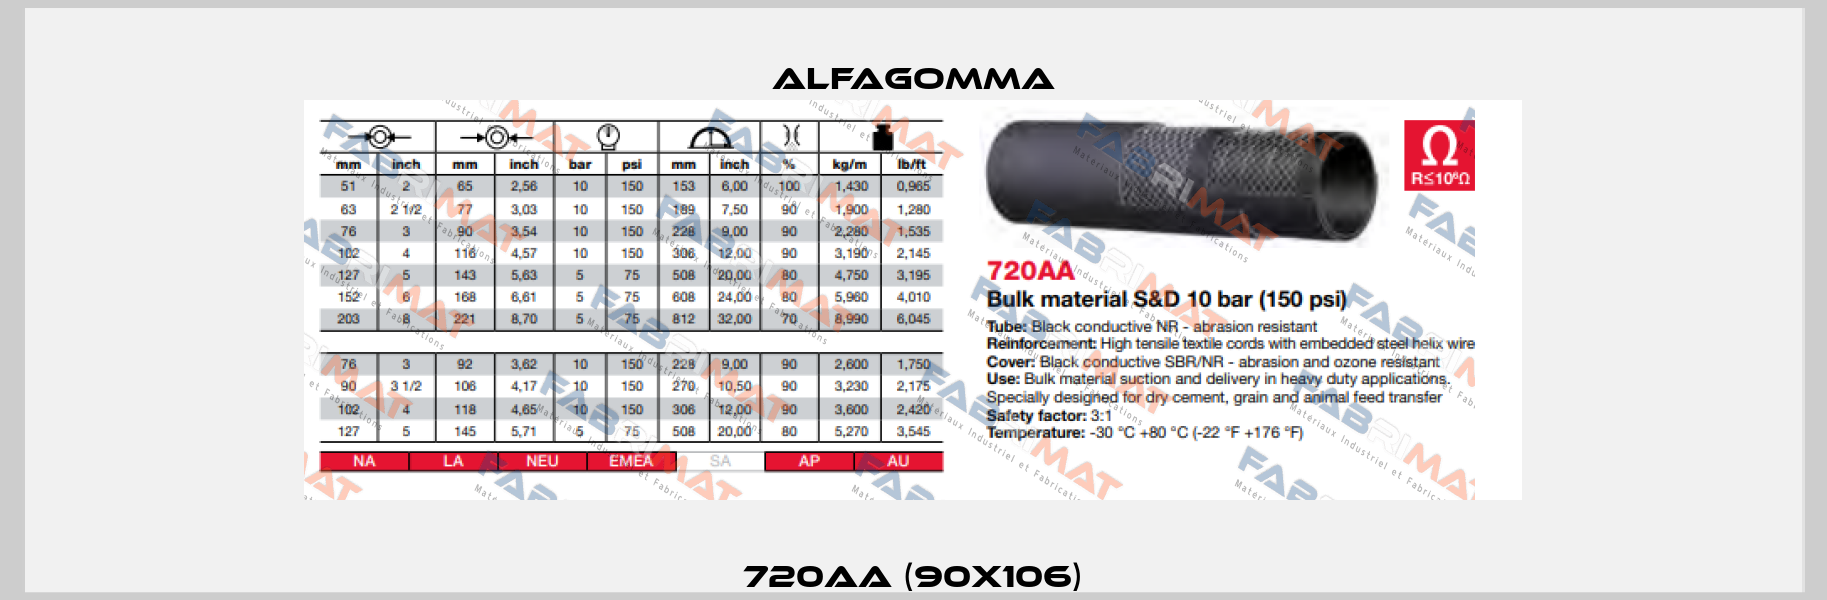 720AA (90X106) Alfagomma